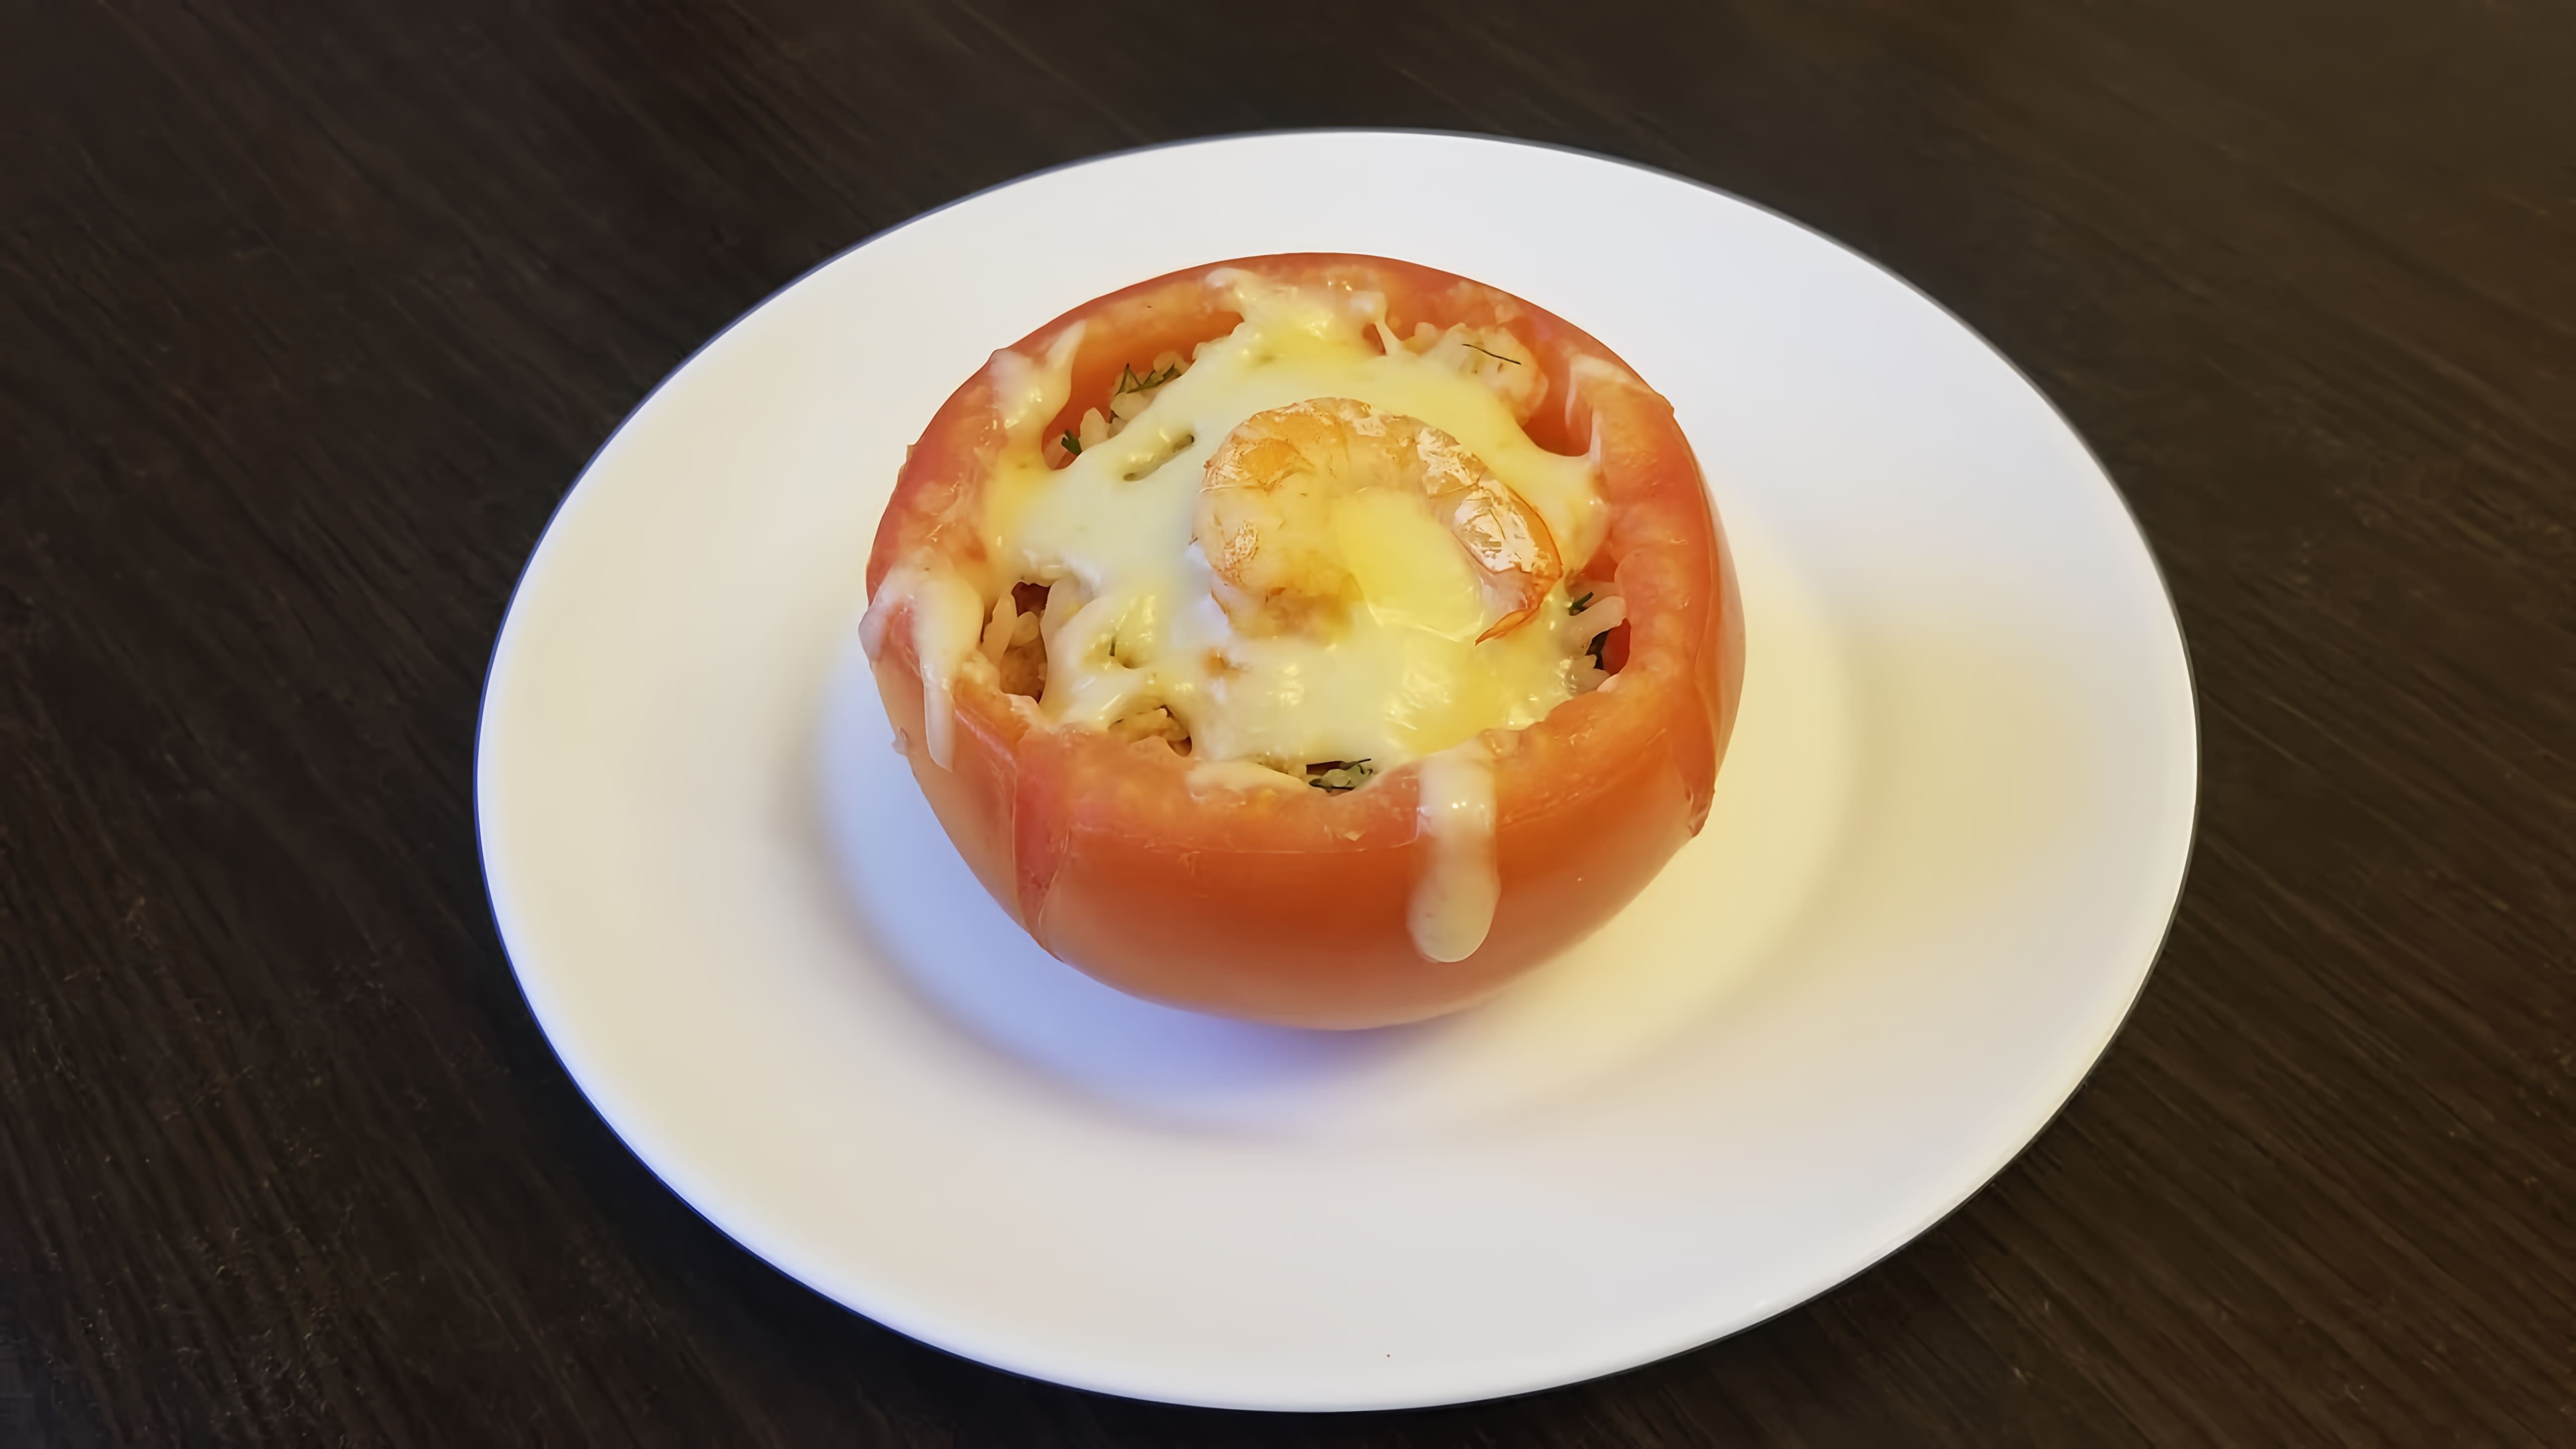 "Просто отличная горячая закуска! Запеченные помидоры фаршированные креветками" - это видео-ролик, который демонстрирует процесс приготовления вкусной и оригинальной горячей закуски